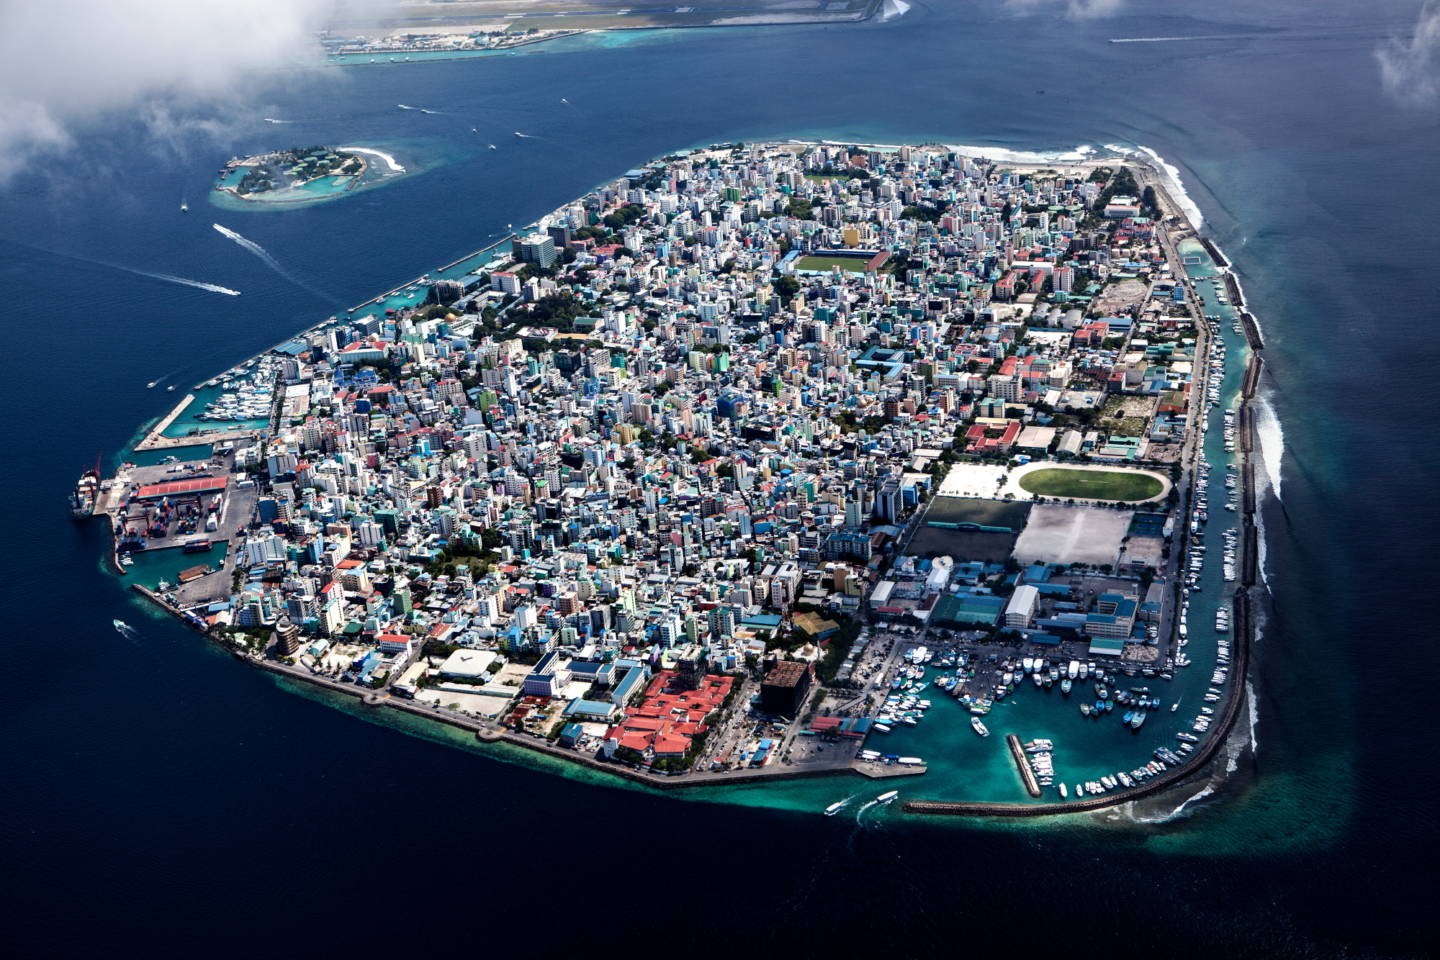 Мале, столица Мальдив. Республика входит в число стран, наиболее уязвимых перед повышением уровня воды. Фотограф Паскаль Мэтр